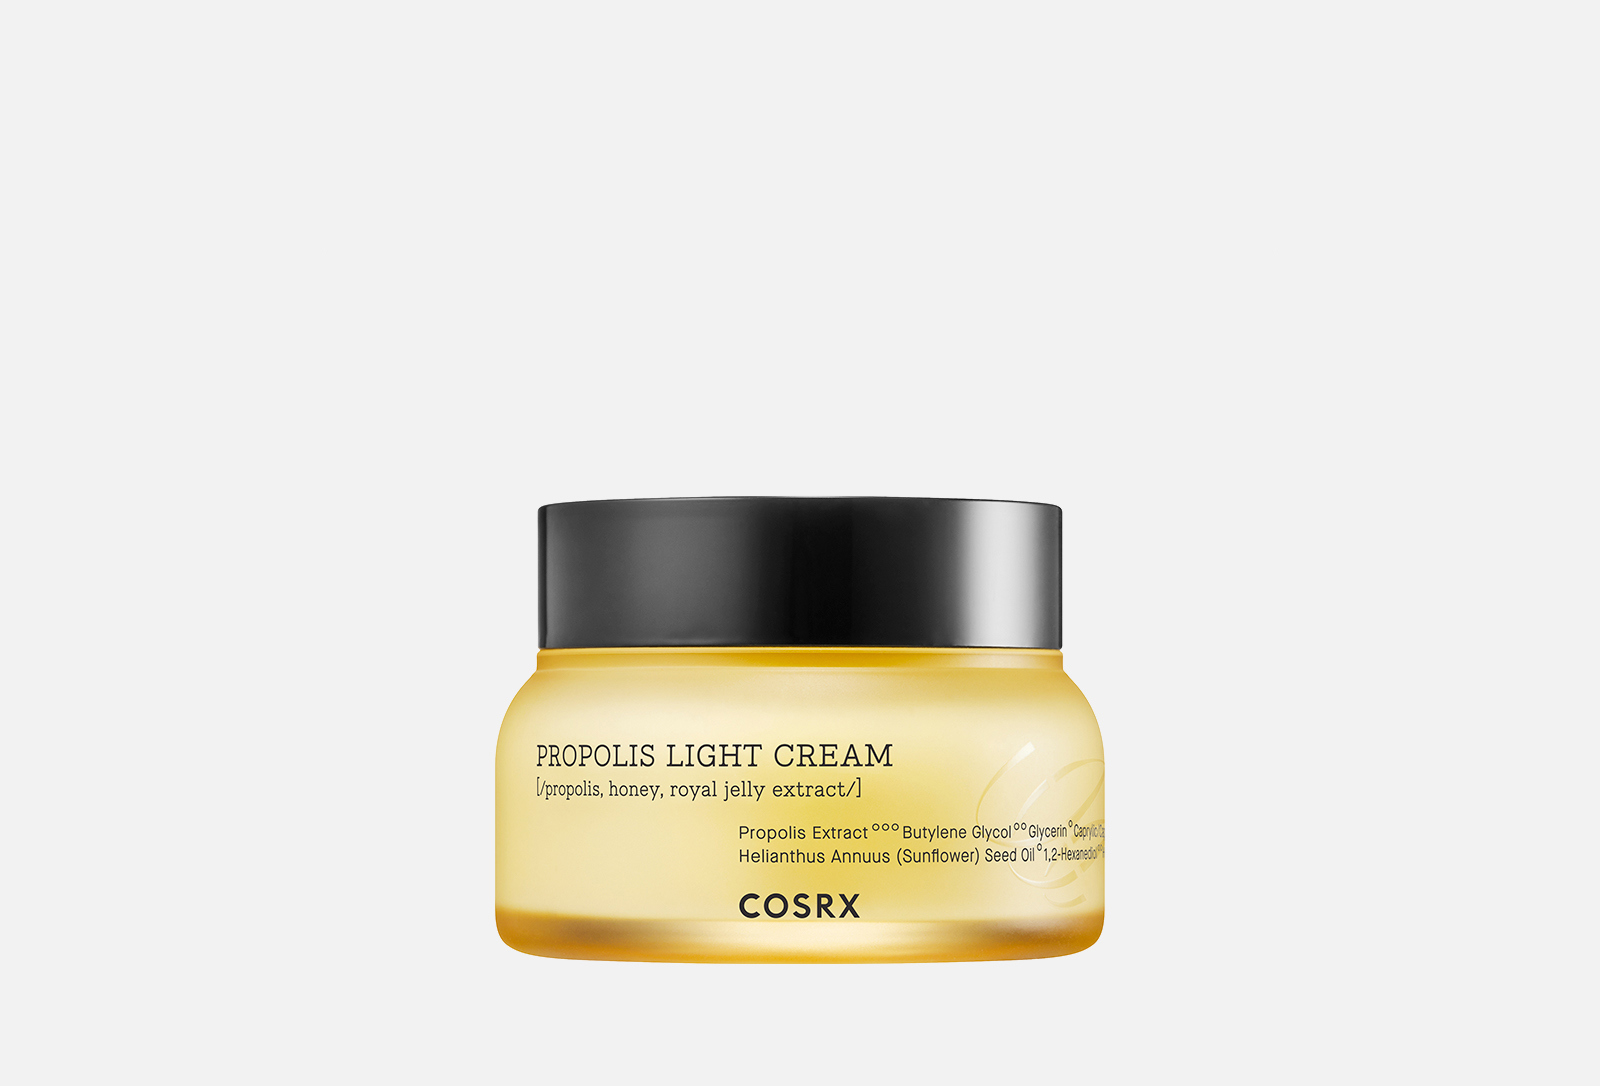 COSRX Крем для лица с прополисом Full Fit Propolis Light Cream 65 мл — купить в Москве